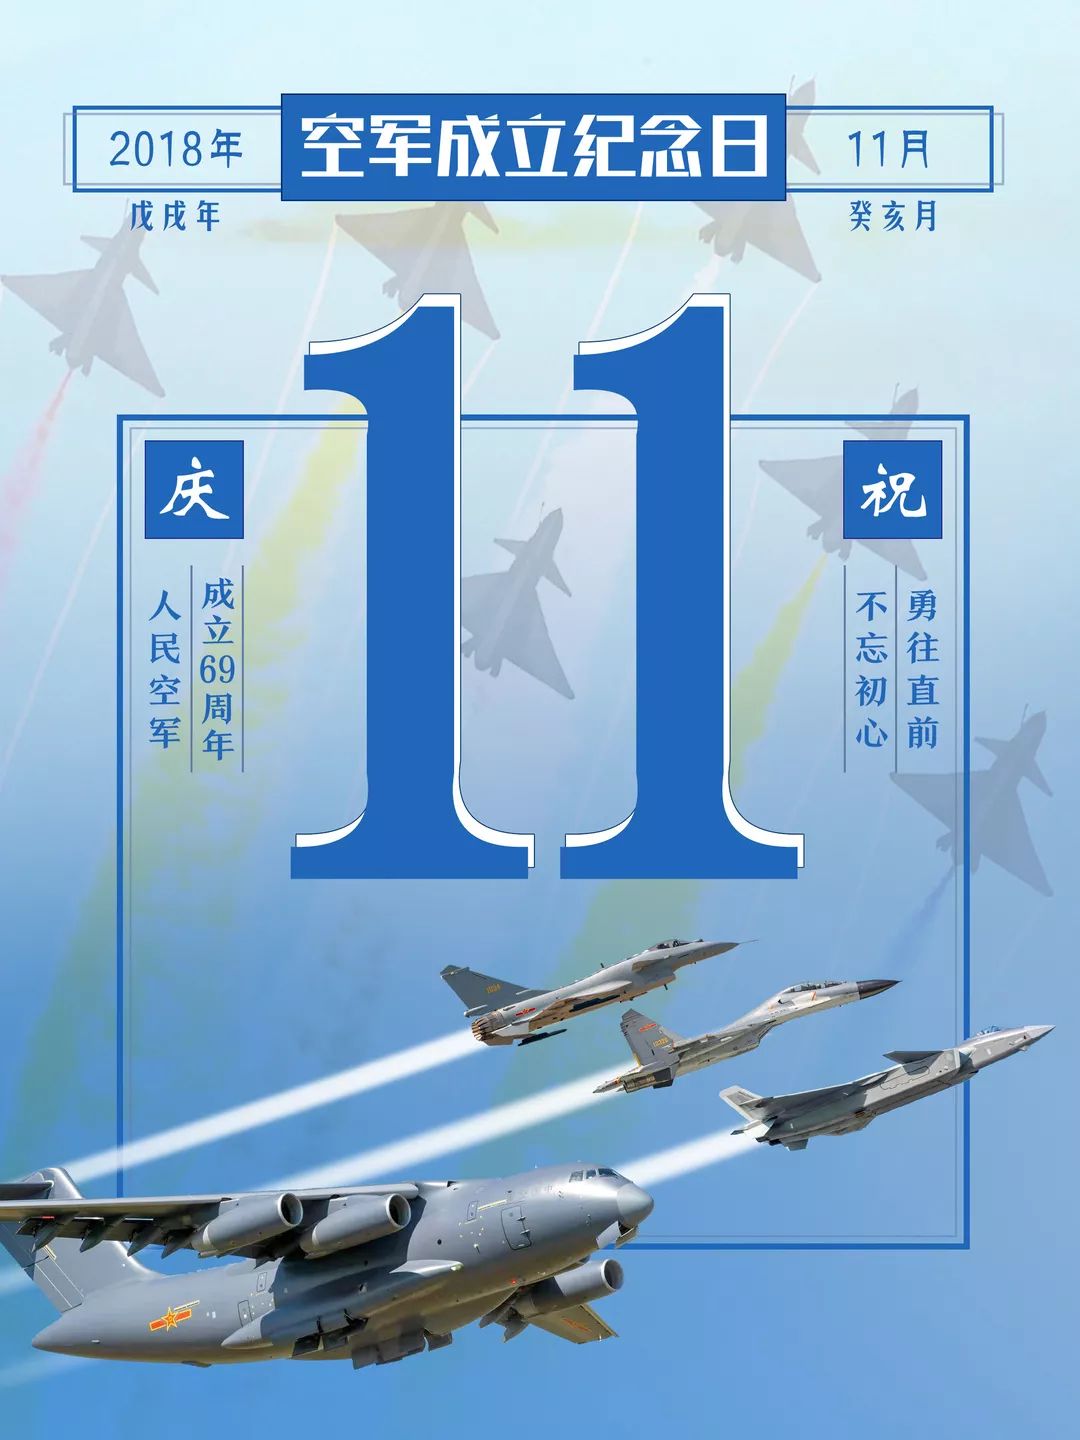 814空军胜利纪念日图片